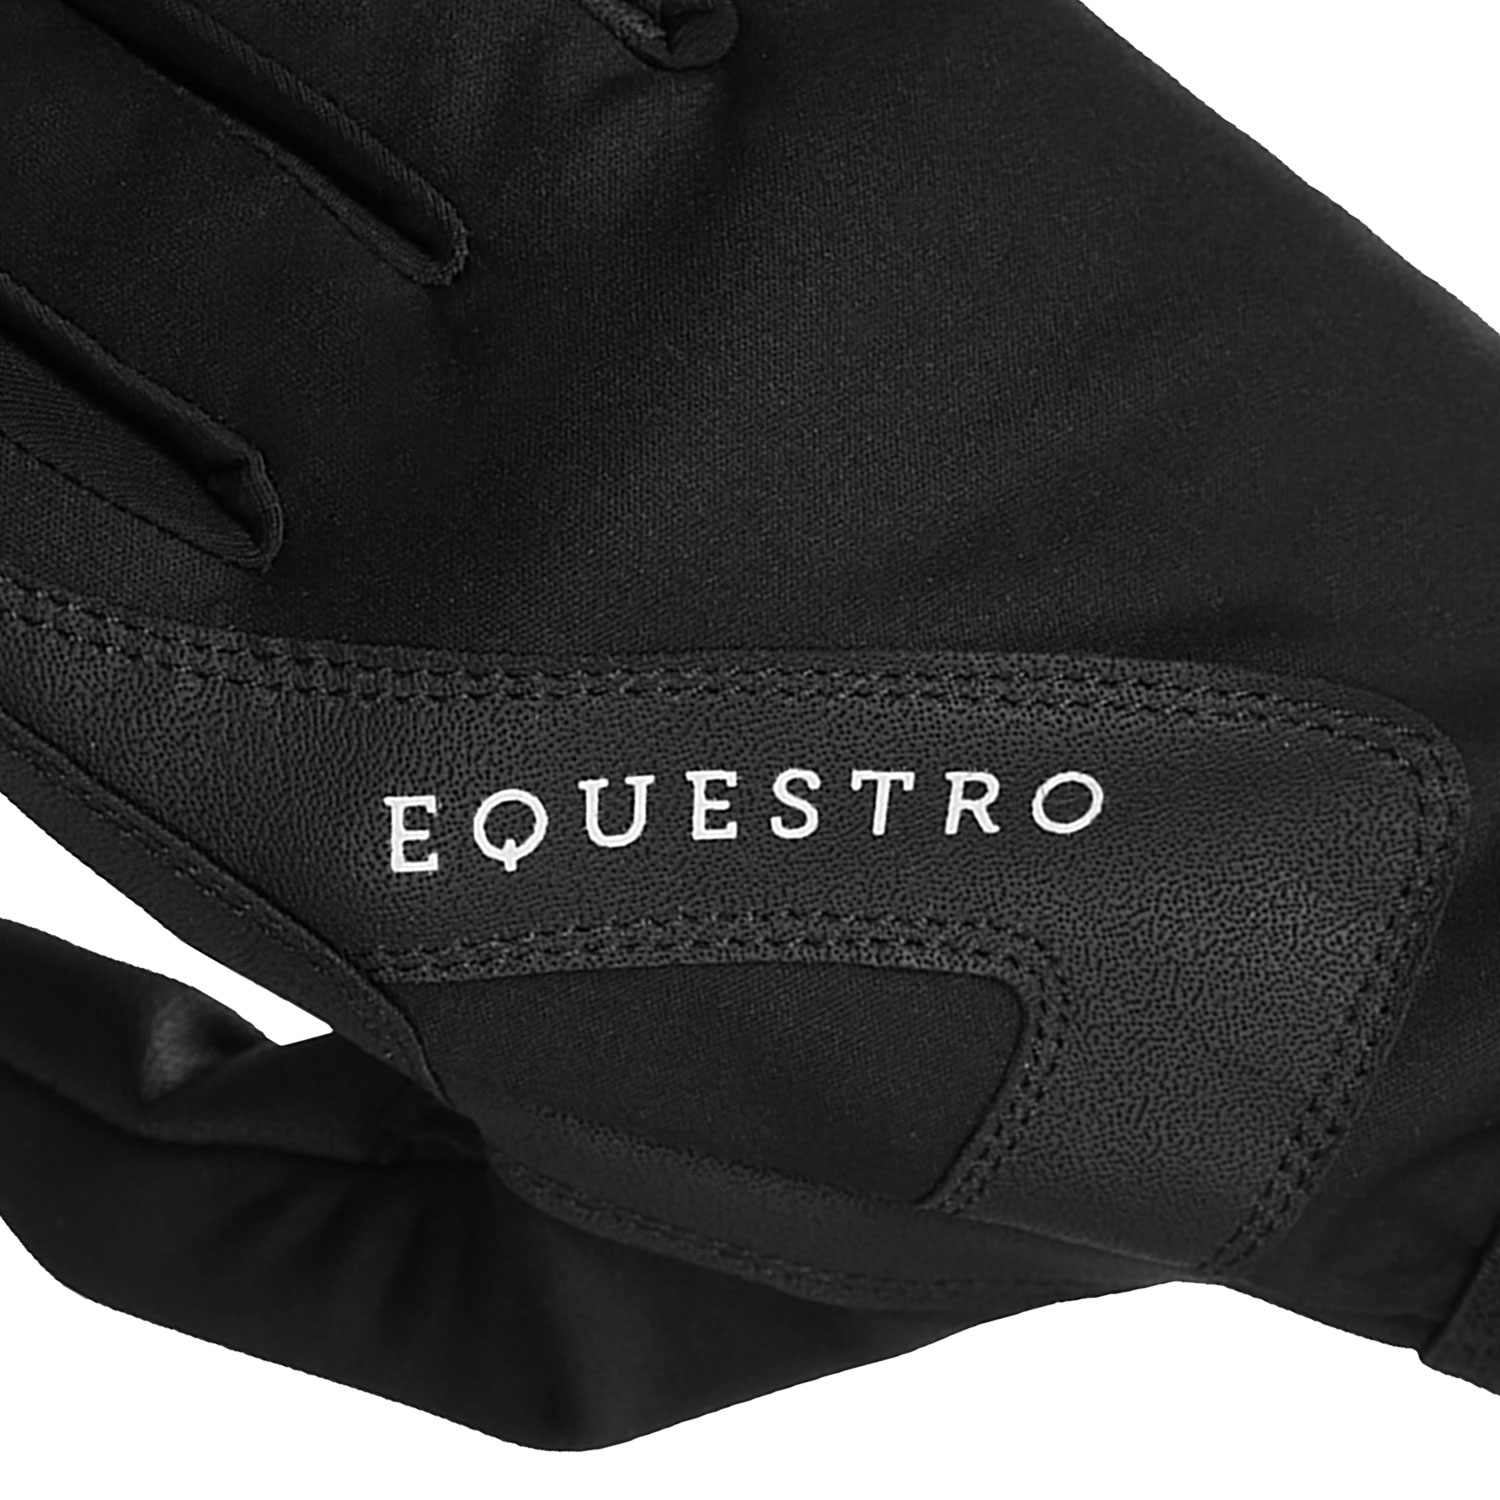 Handschuhe Equestro Guanto Winter